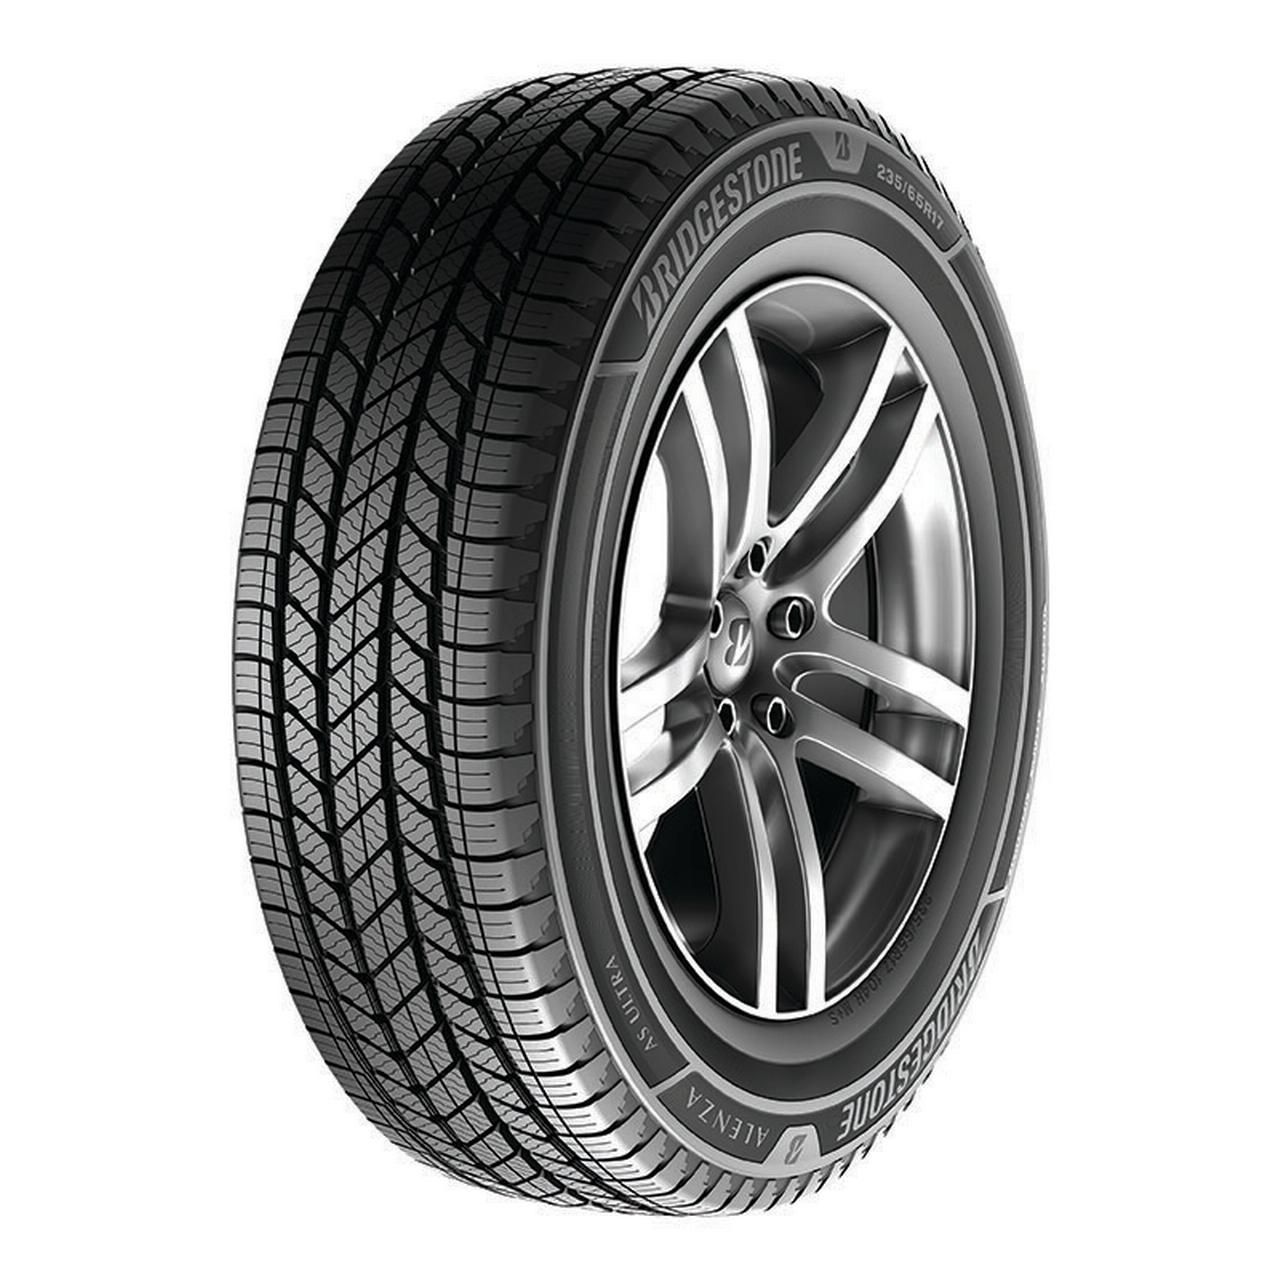 Bridgestone Alenza A/S Ultra P275/60R20 115H Tire - image 1 of 2